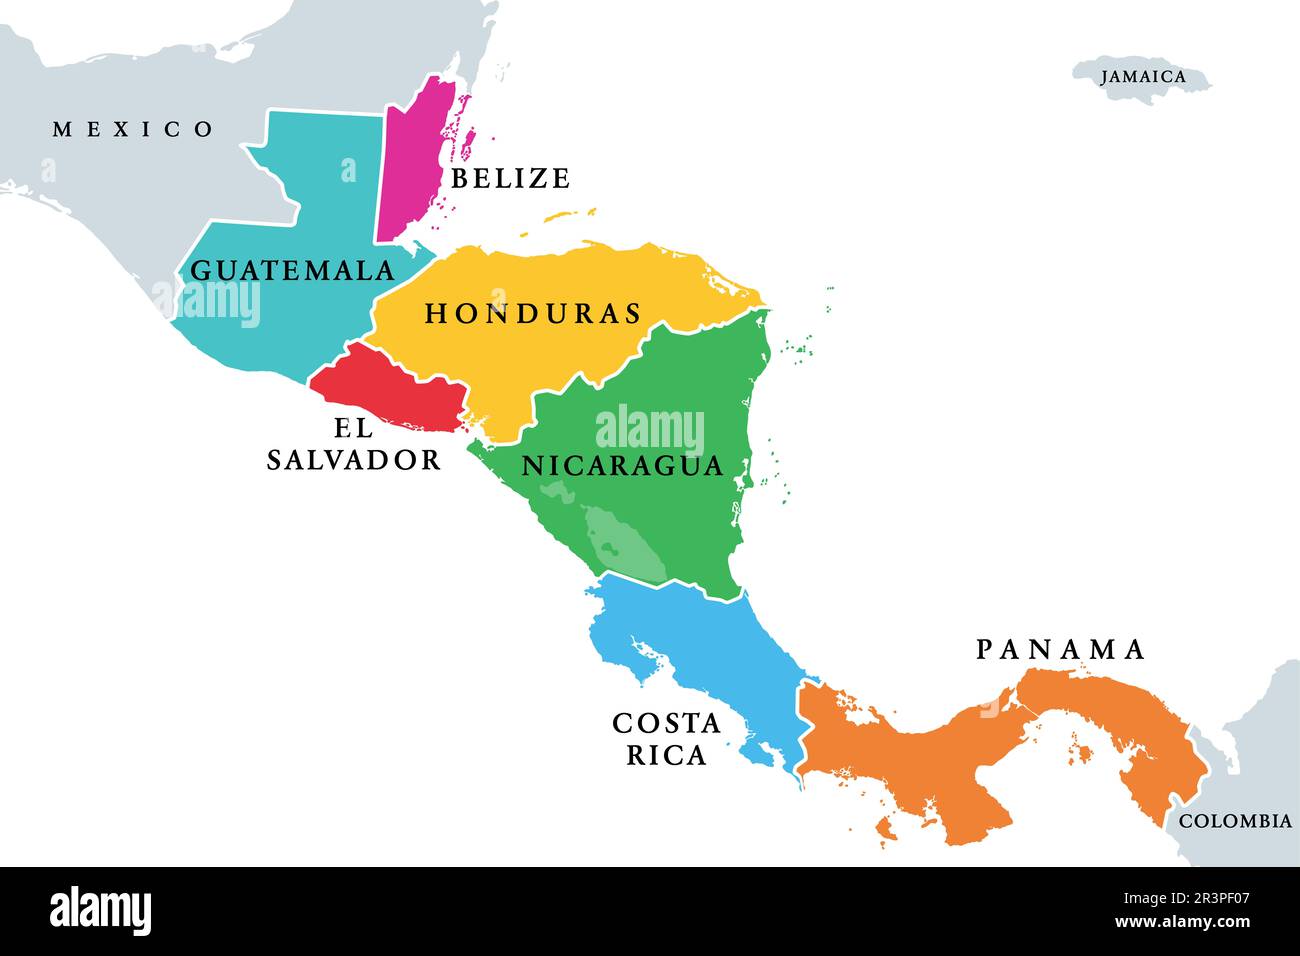 Pays d'Amérique centrale, carte politique colorée. Sous-région des Amériques, entre le Mexique et la Colombie. Banque D'Images